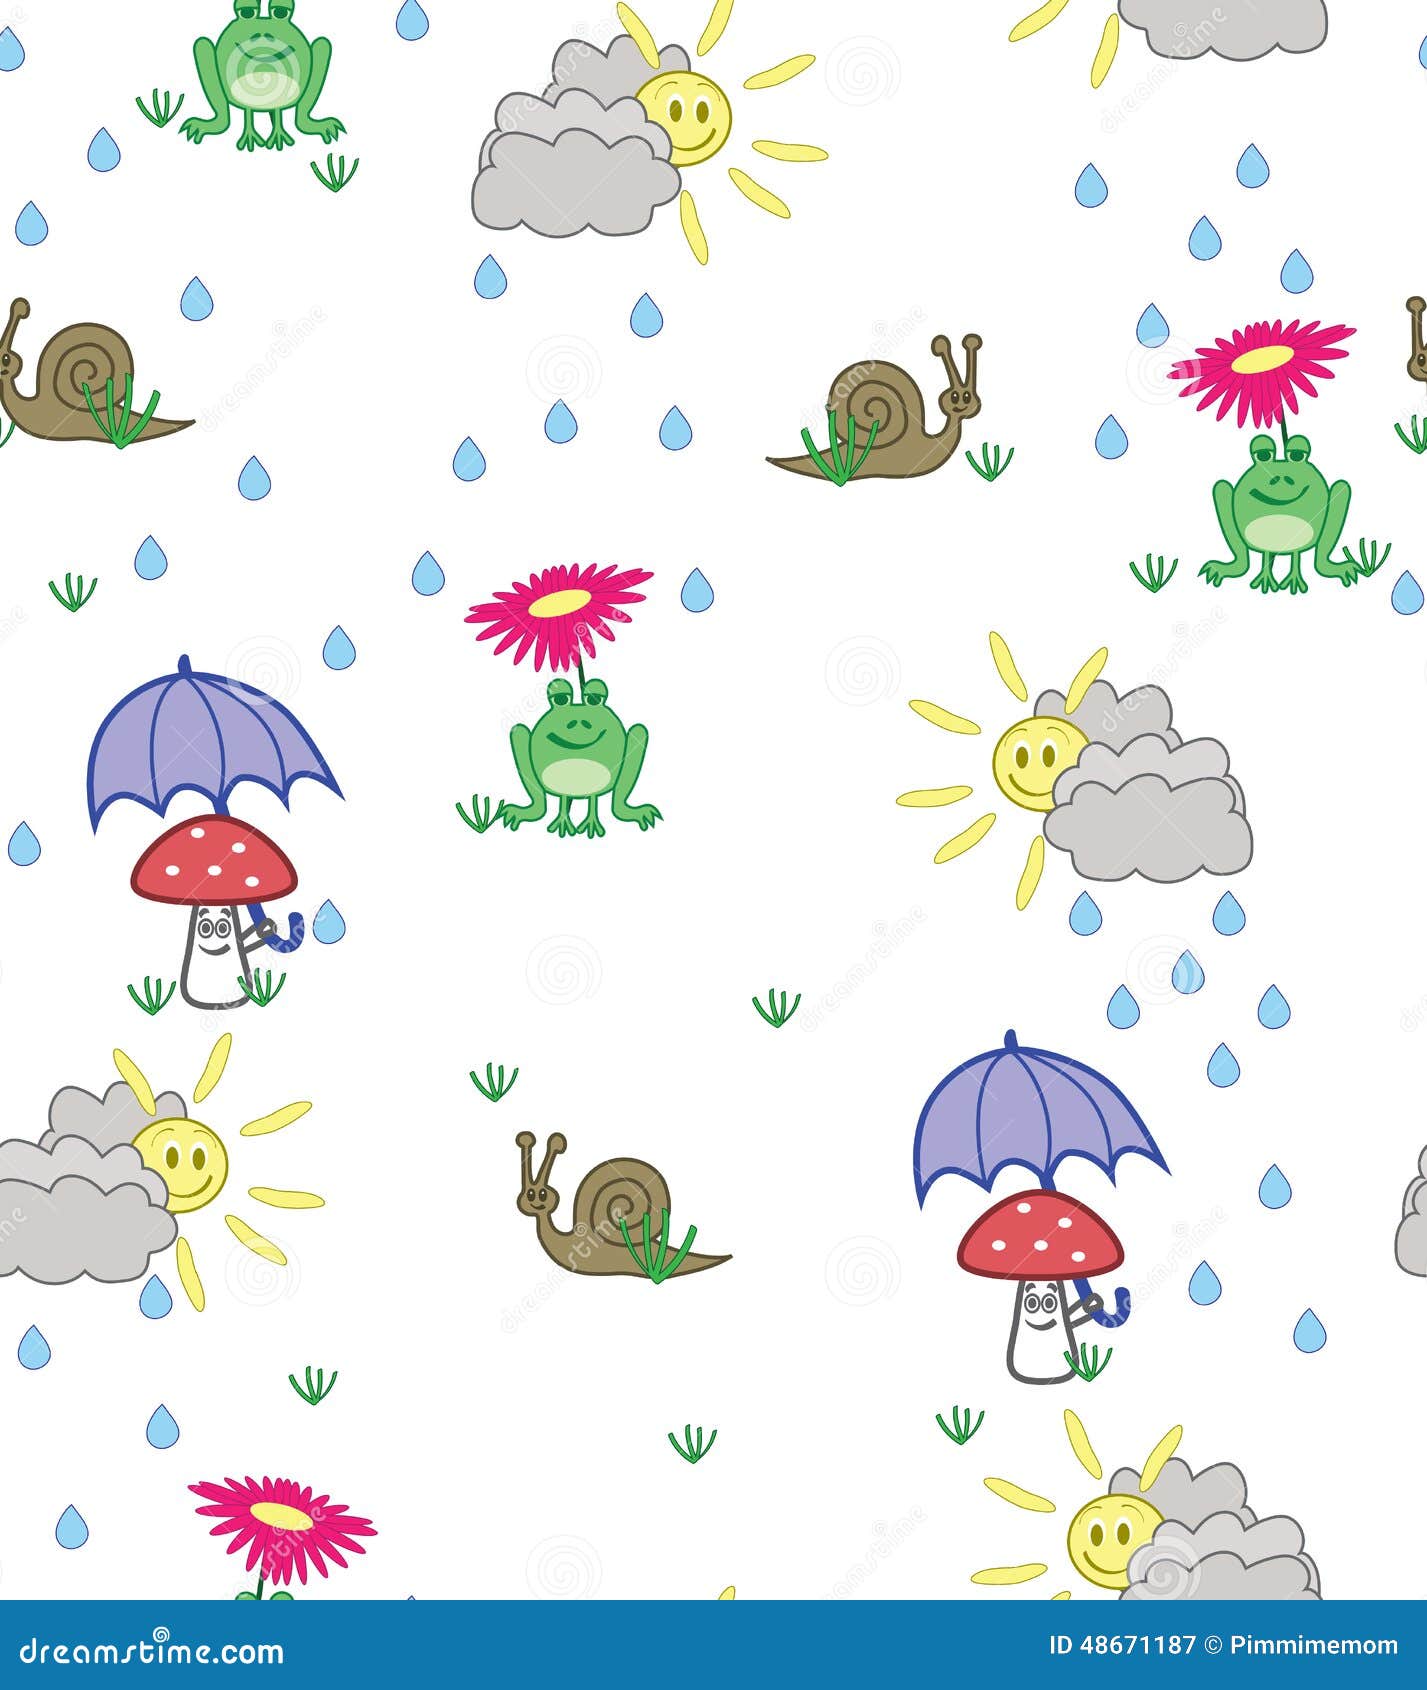 Gullig tecknad filmstilbakgrund av grodor, sniglar och champinjoner i solsken och regn